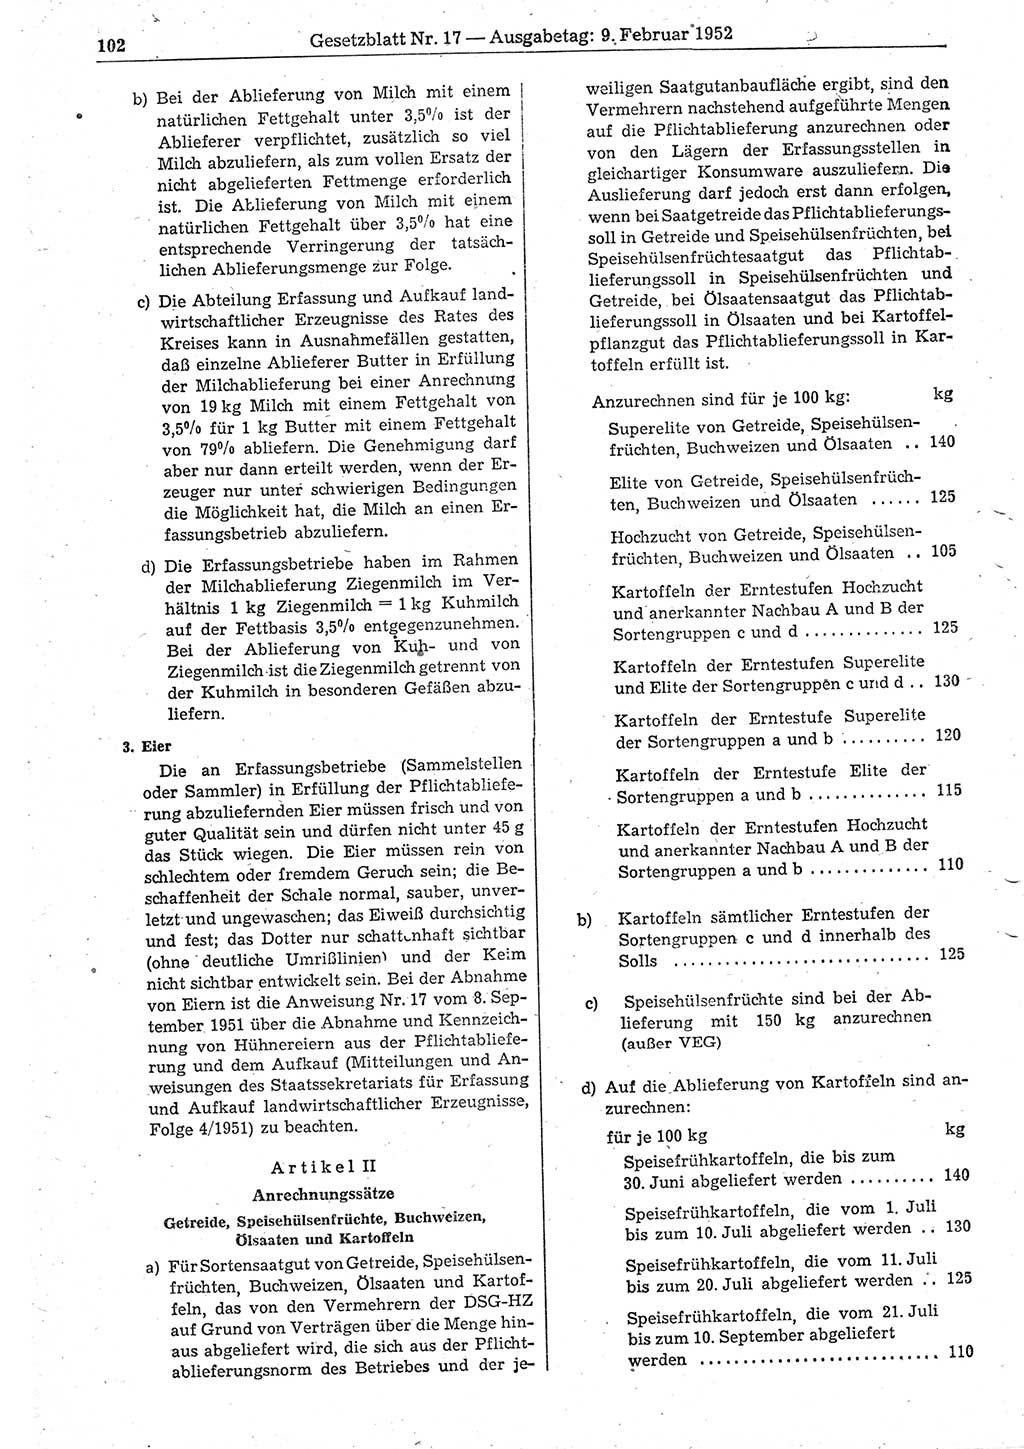 Gesetzblatt (GBl.) der Deutschen Demokratischen Republik (DDR) 1952, Seite 102 (GBl. DDR 1952, S. 102)